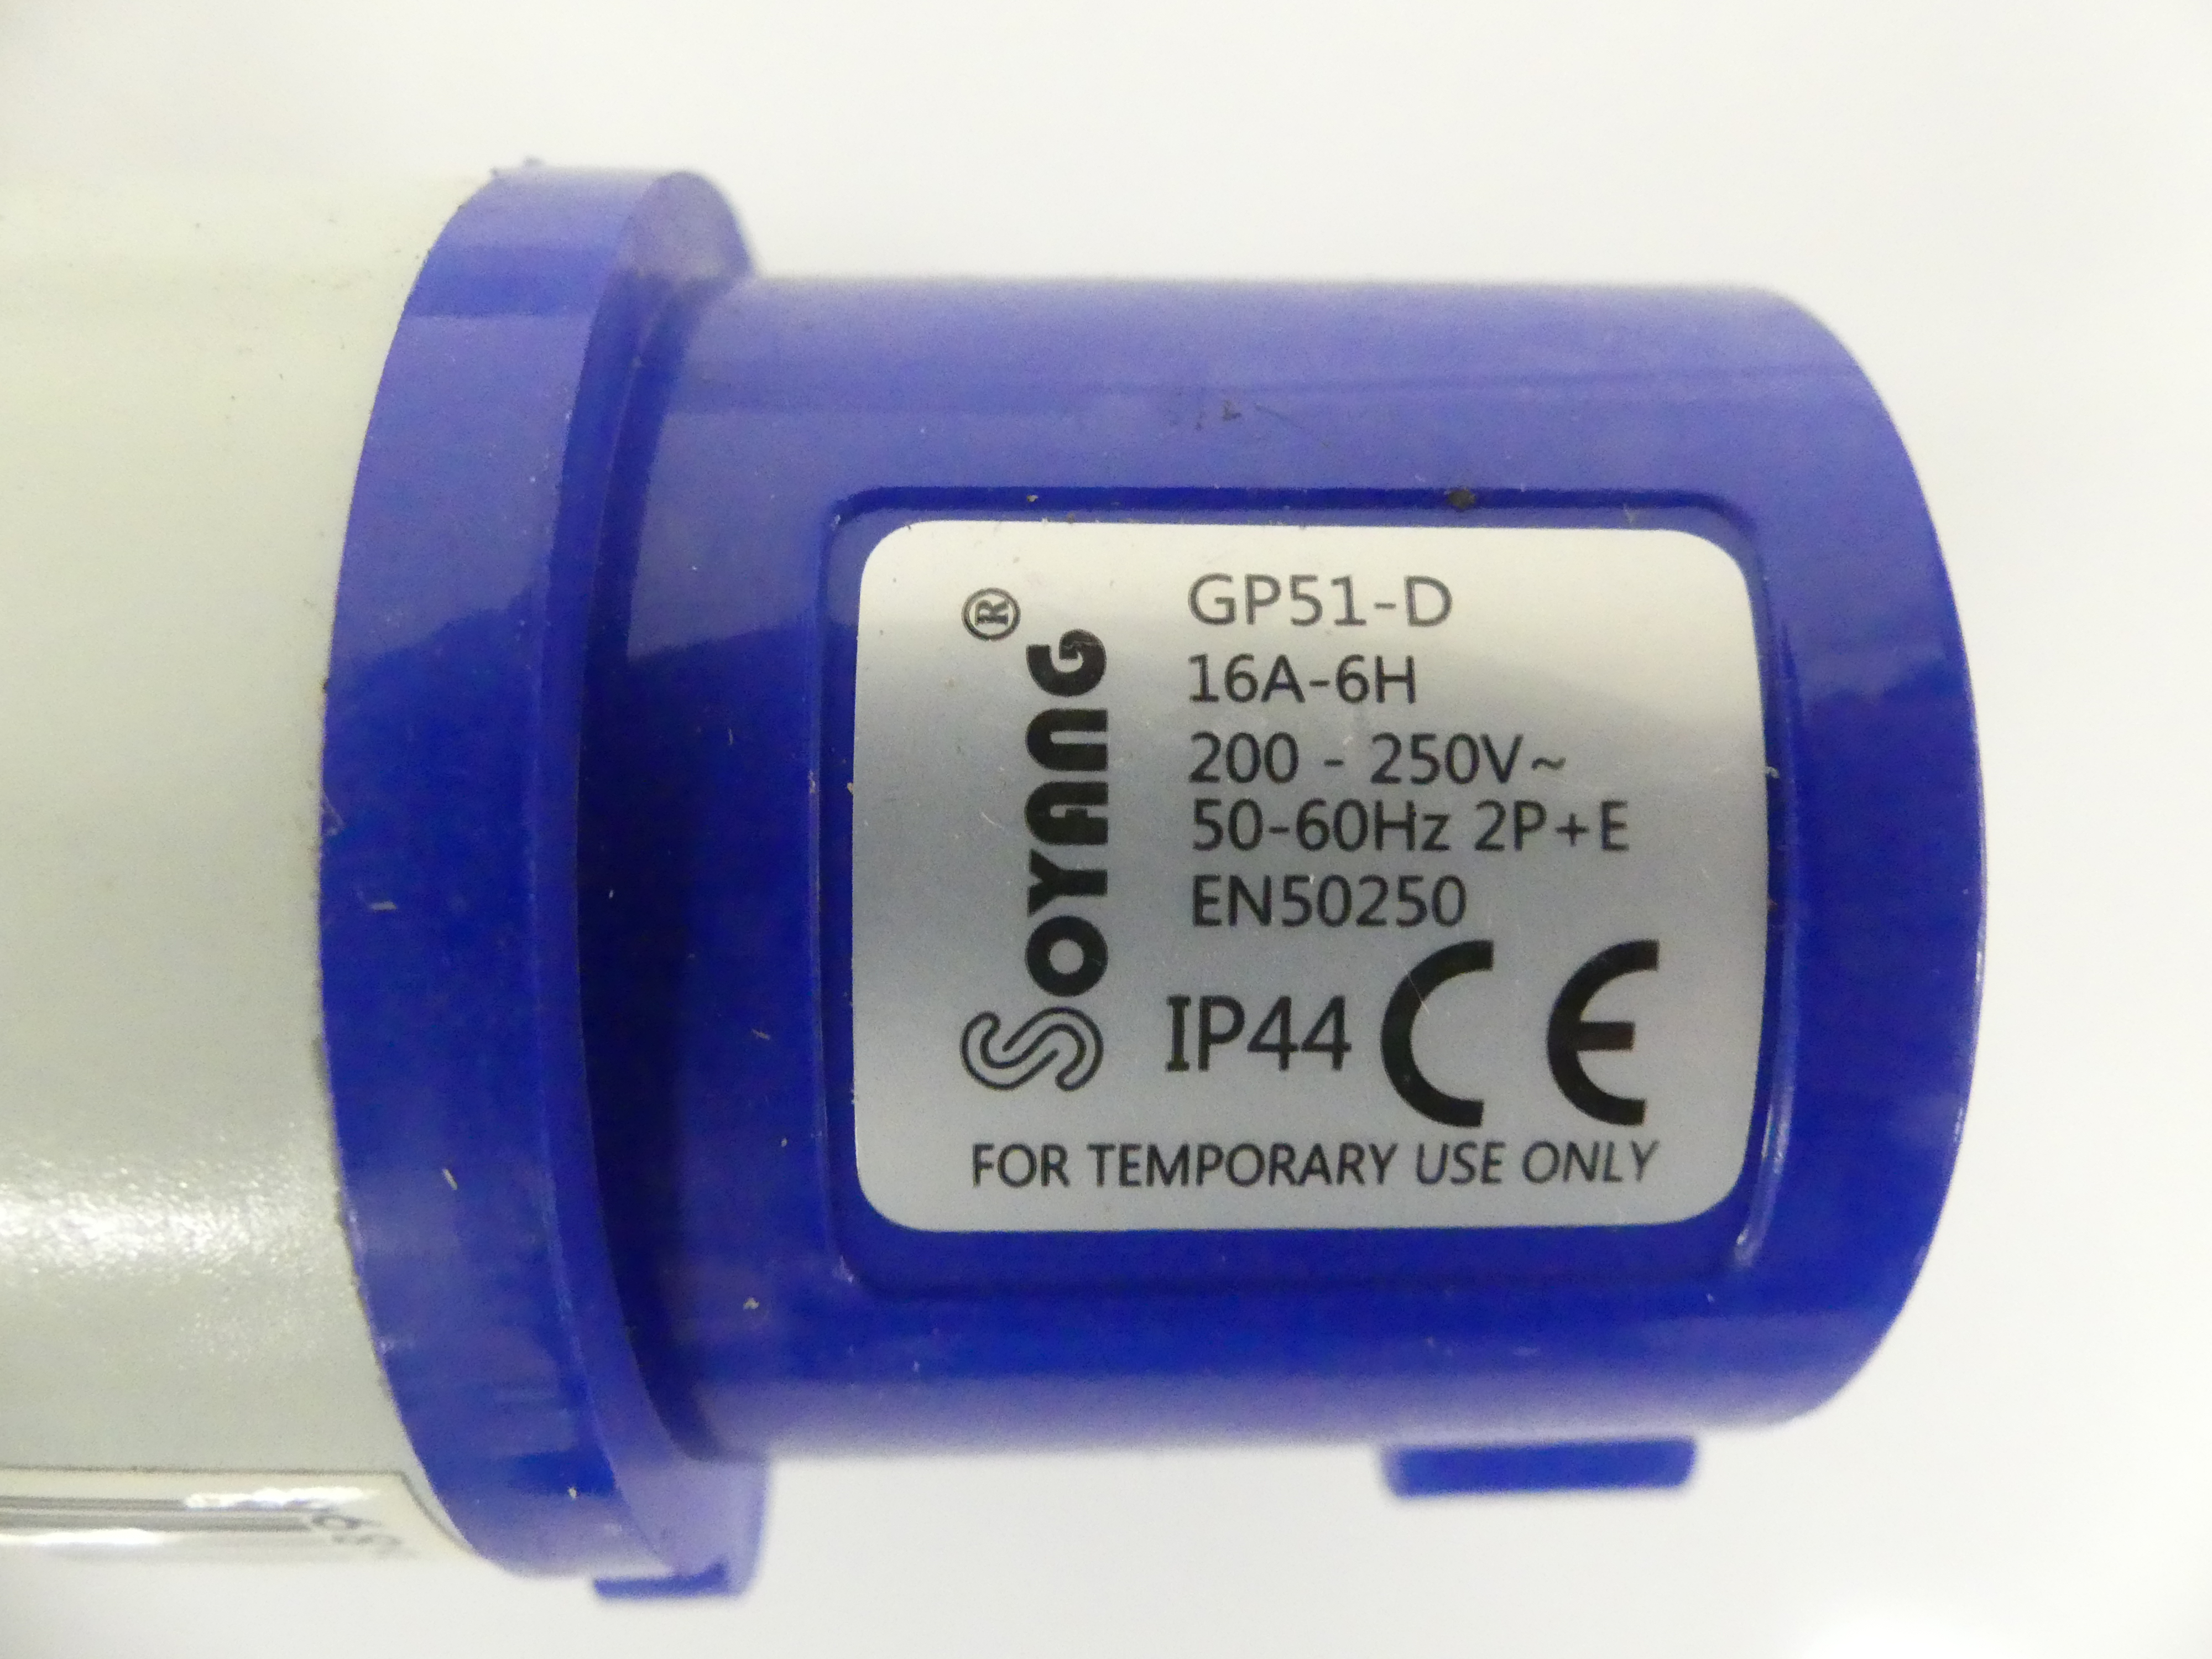 2x Soyang 230V verloopstekker 3-polig,  GP51-D, IP44  